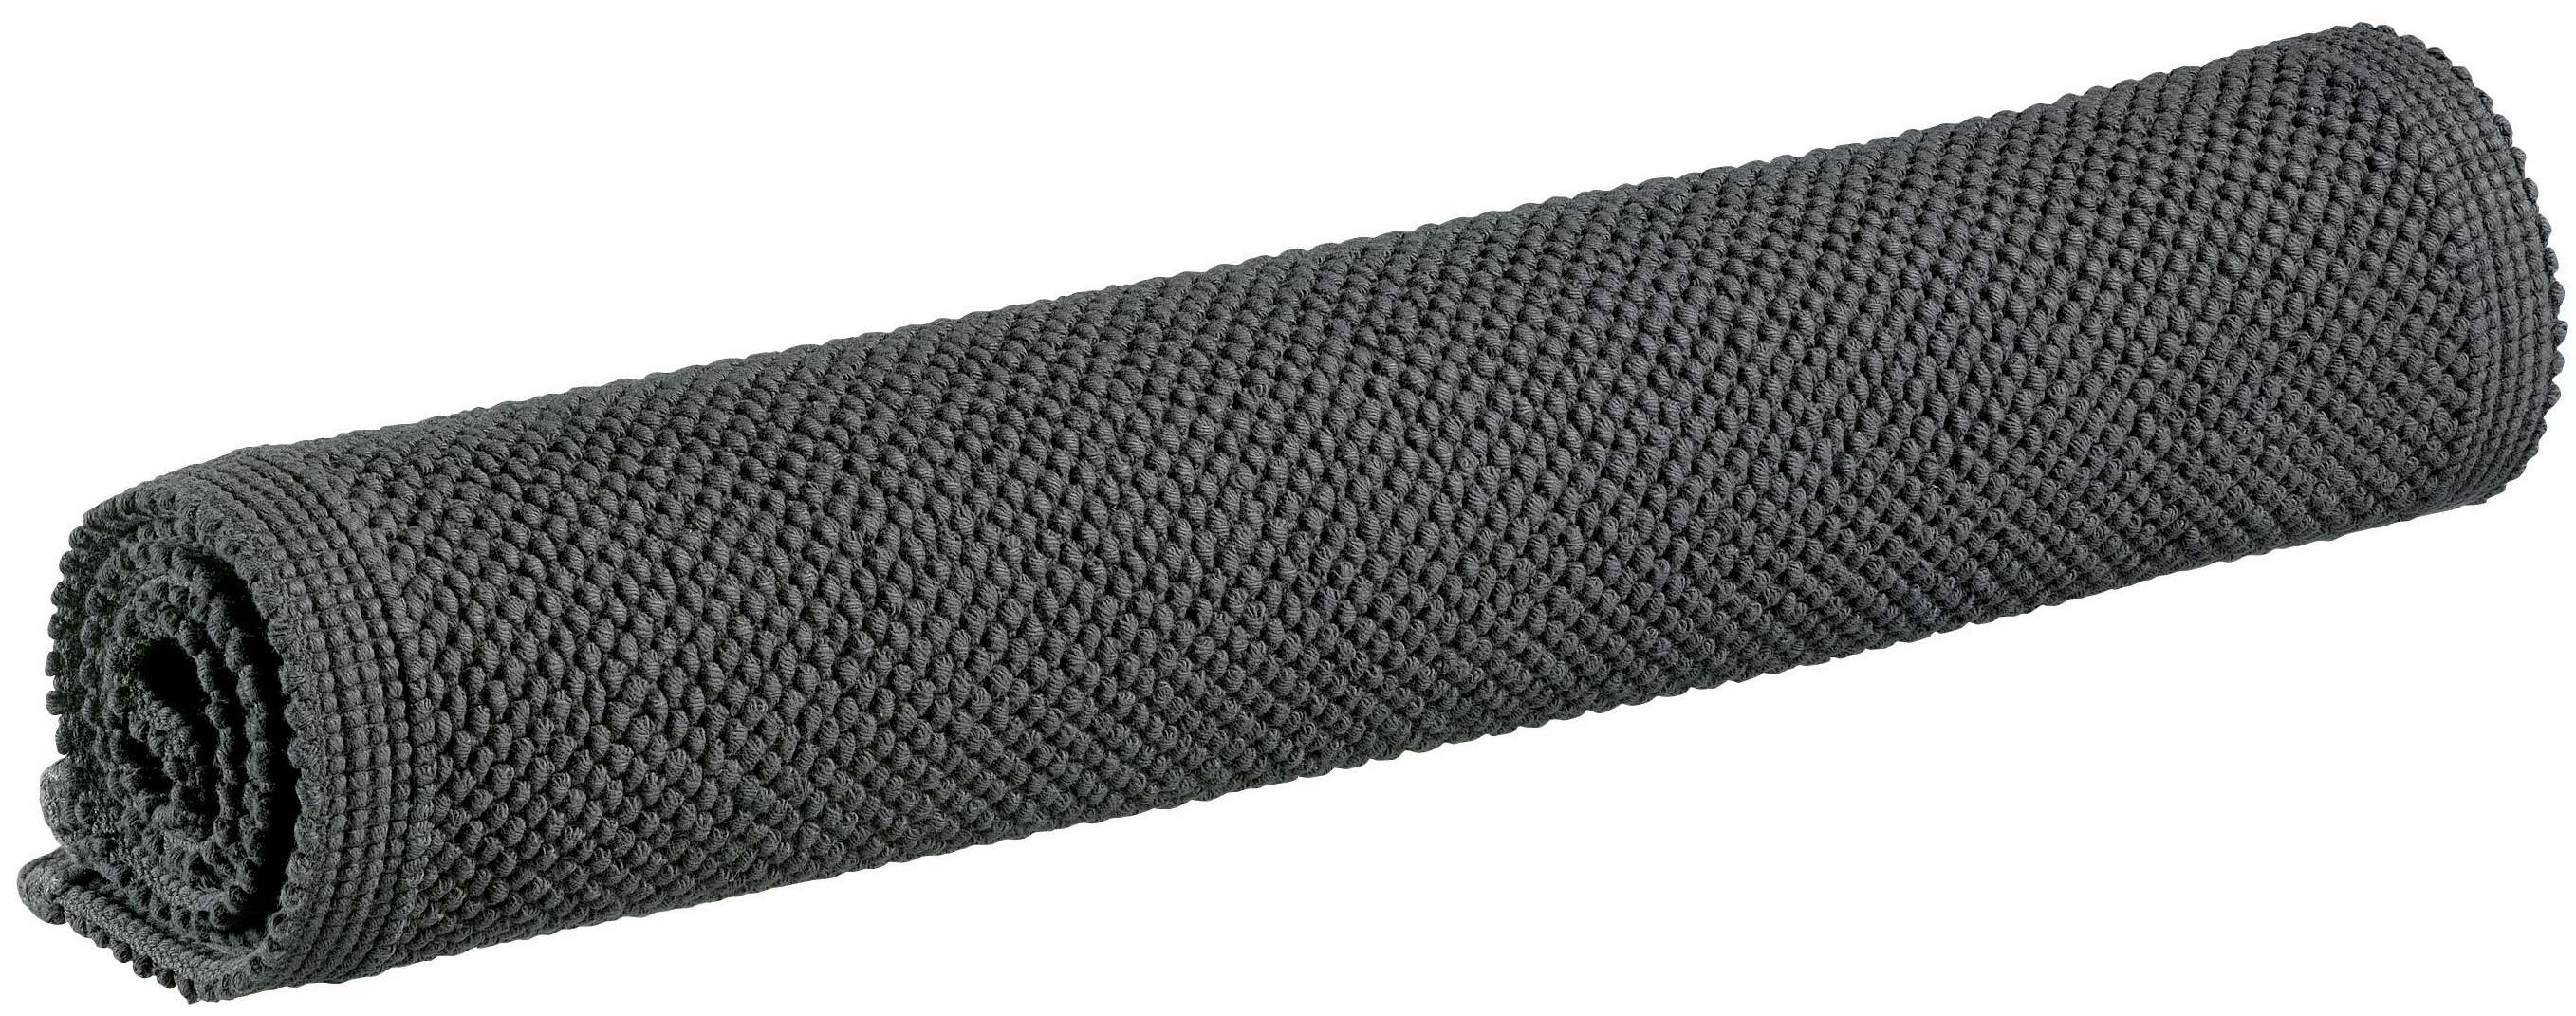 Badematte Etia 54x110cm, carbone